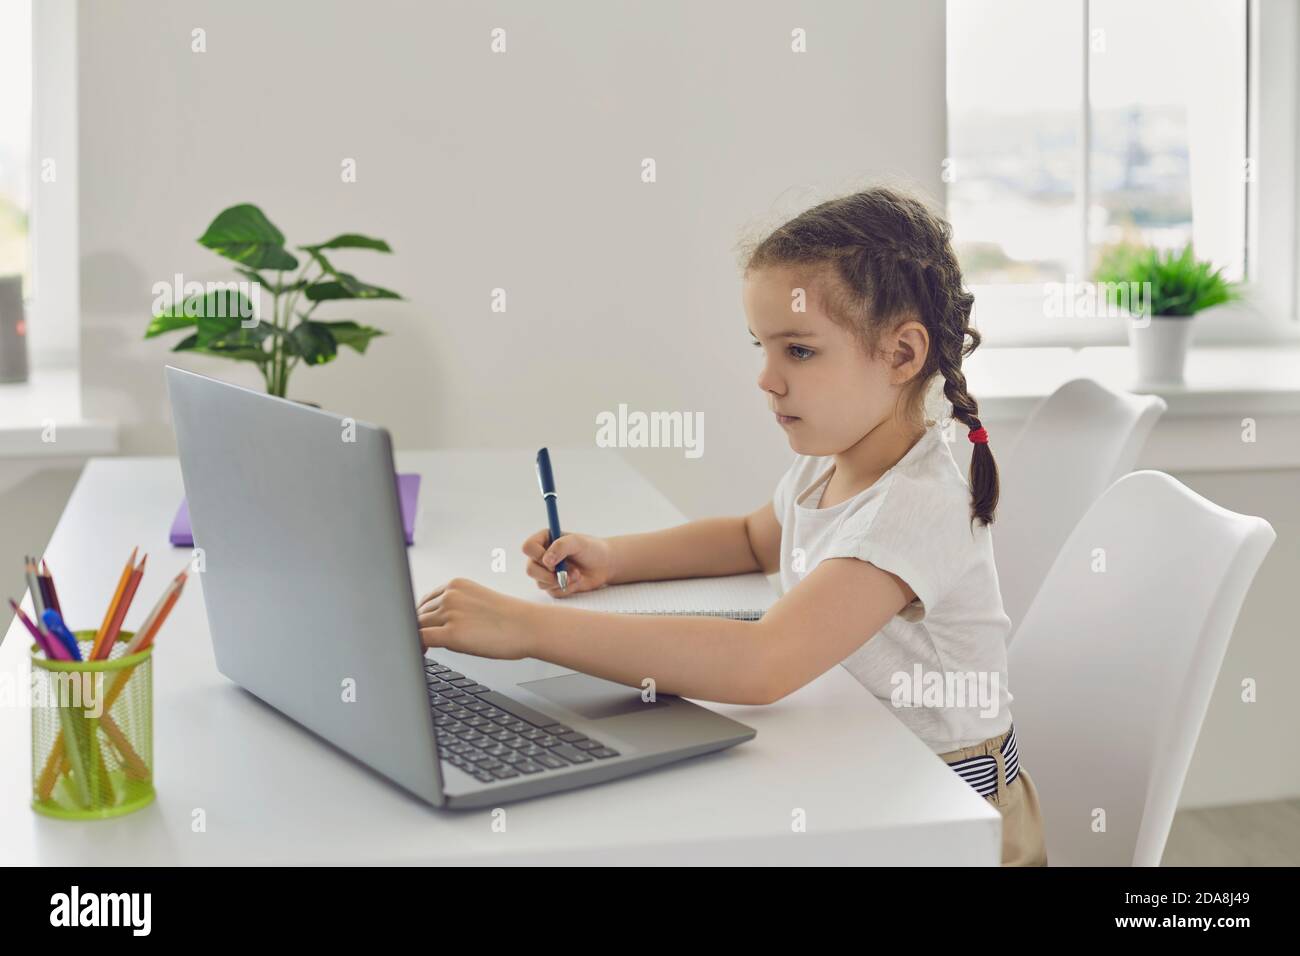 Formazione online per bambini. Una ragazza con i pigtail sta guardando una video lezione usando un laptop in un salotto. Foto Stock